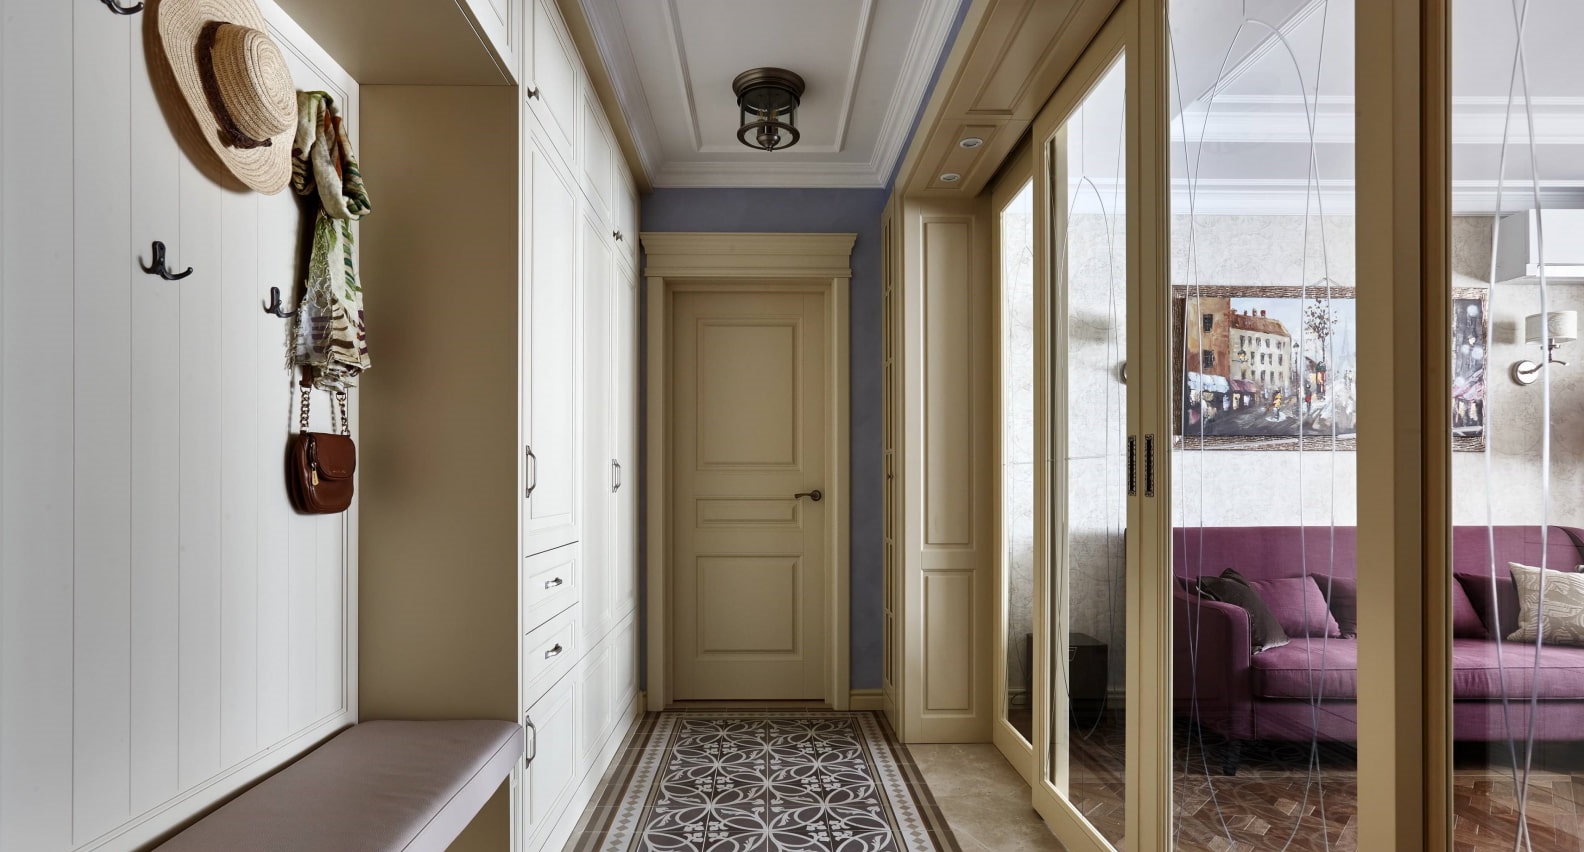 Как оформить длинный коридор в квартире фото узкий